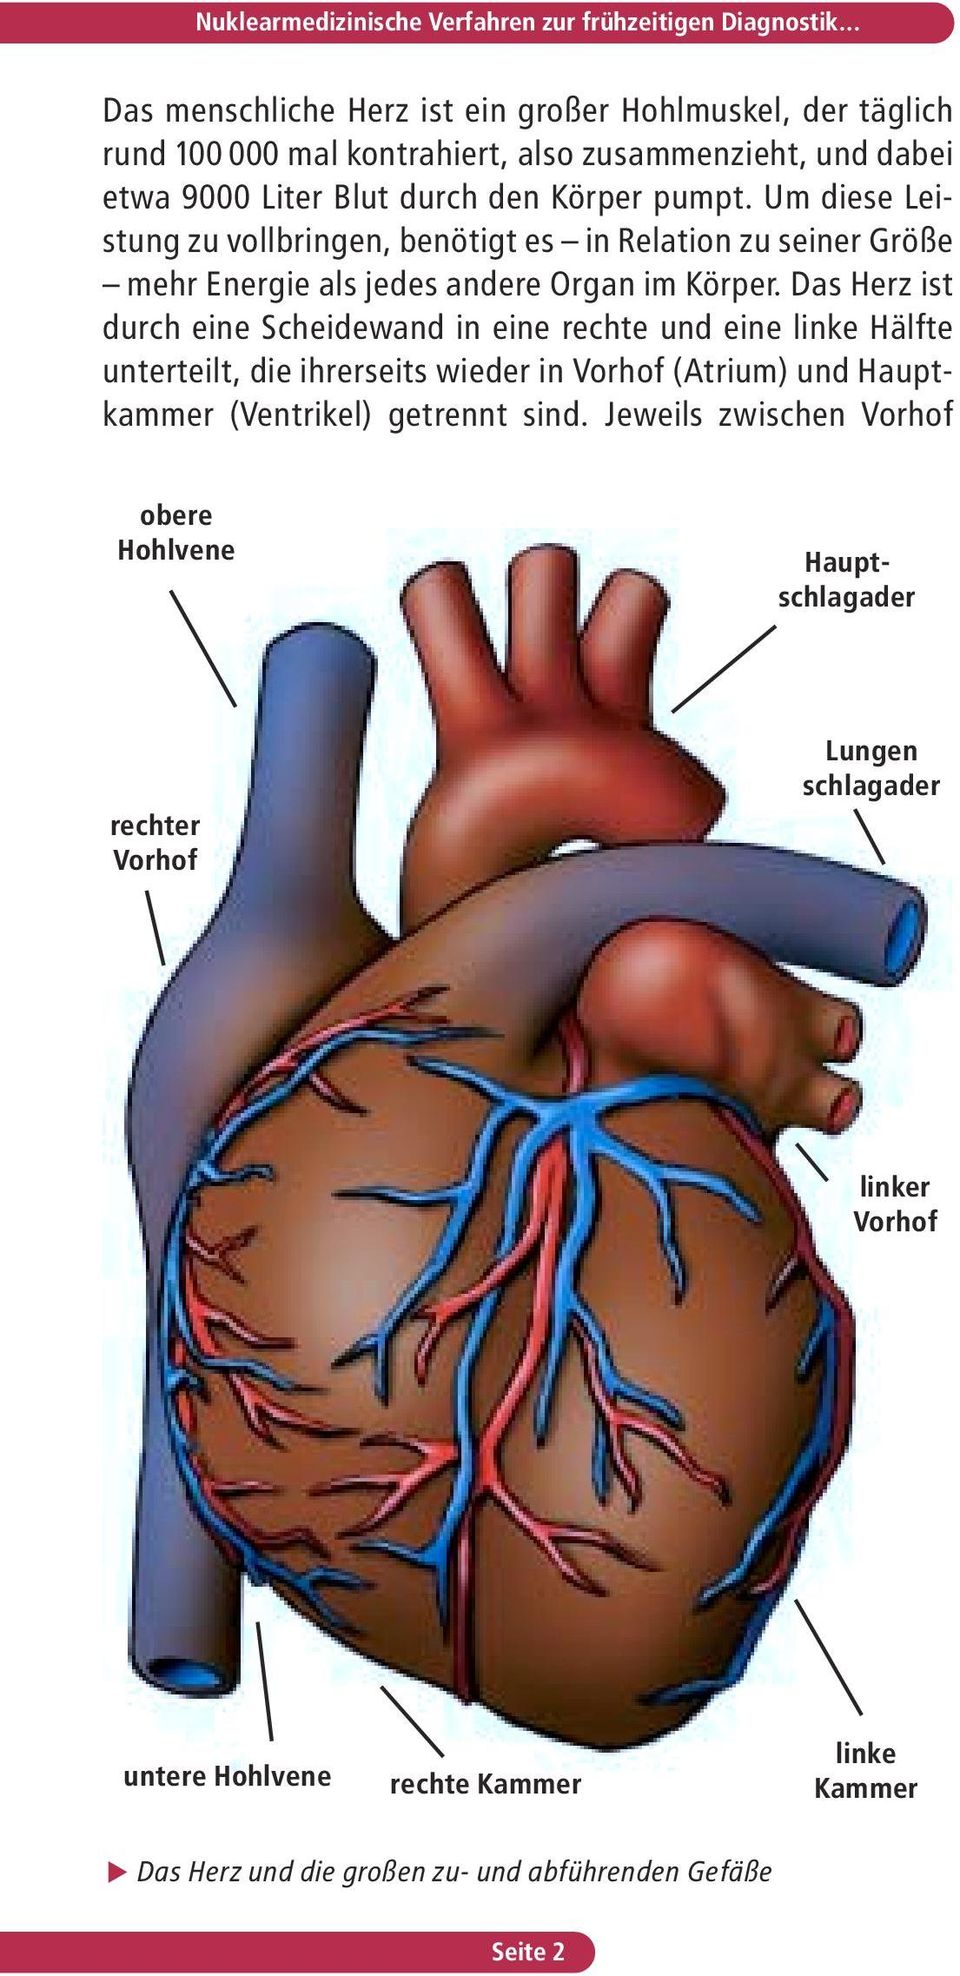 Das Herz ist durch eine Scheidewand in eine rechte und eine linke Hälfte unterteilt, die ihrerseits wieder in Vorhof (Atrium) und Hauptkammer (Ventrikel) getrennt sind.